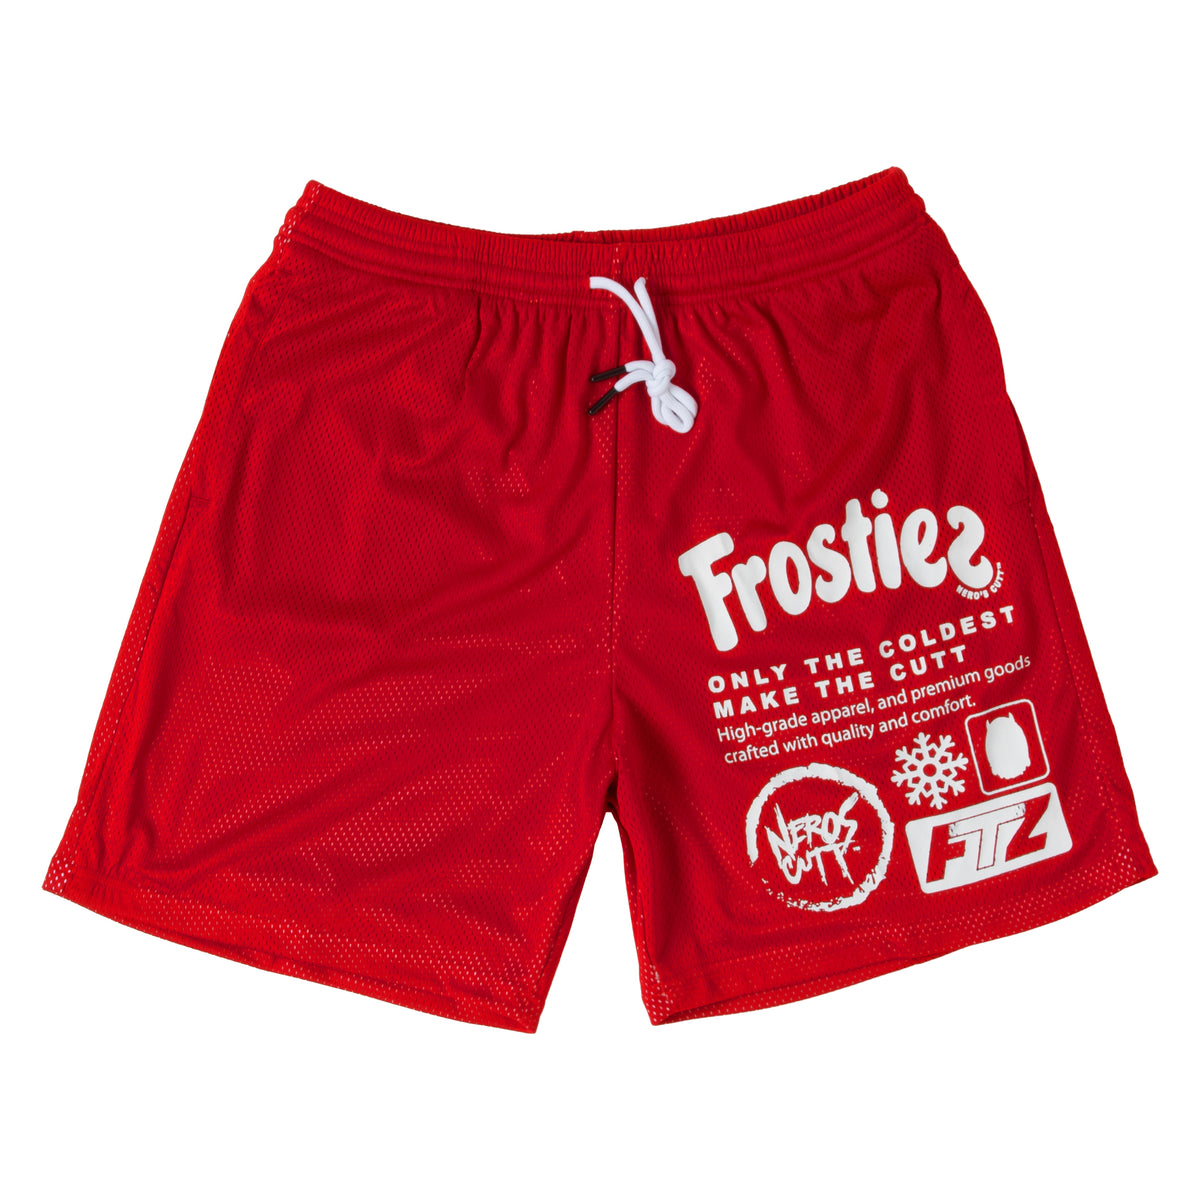 Frostiez Starburst Shorts - Frostiez Official